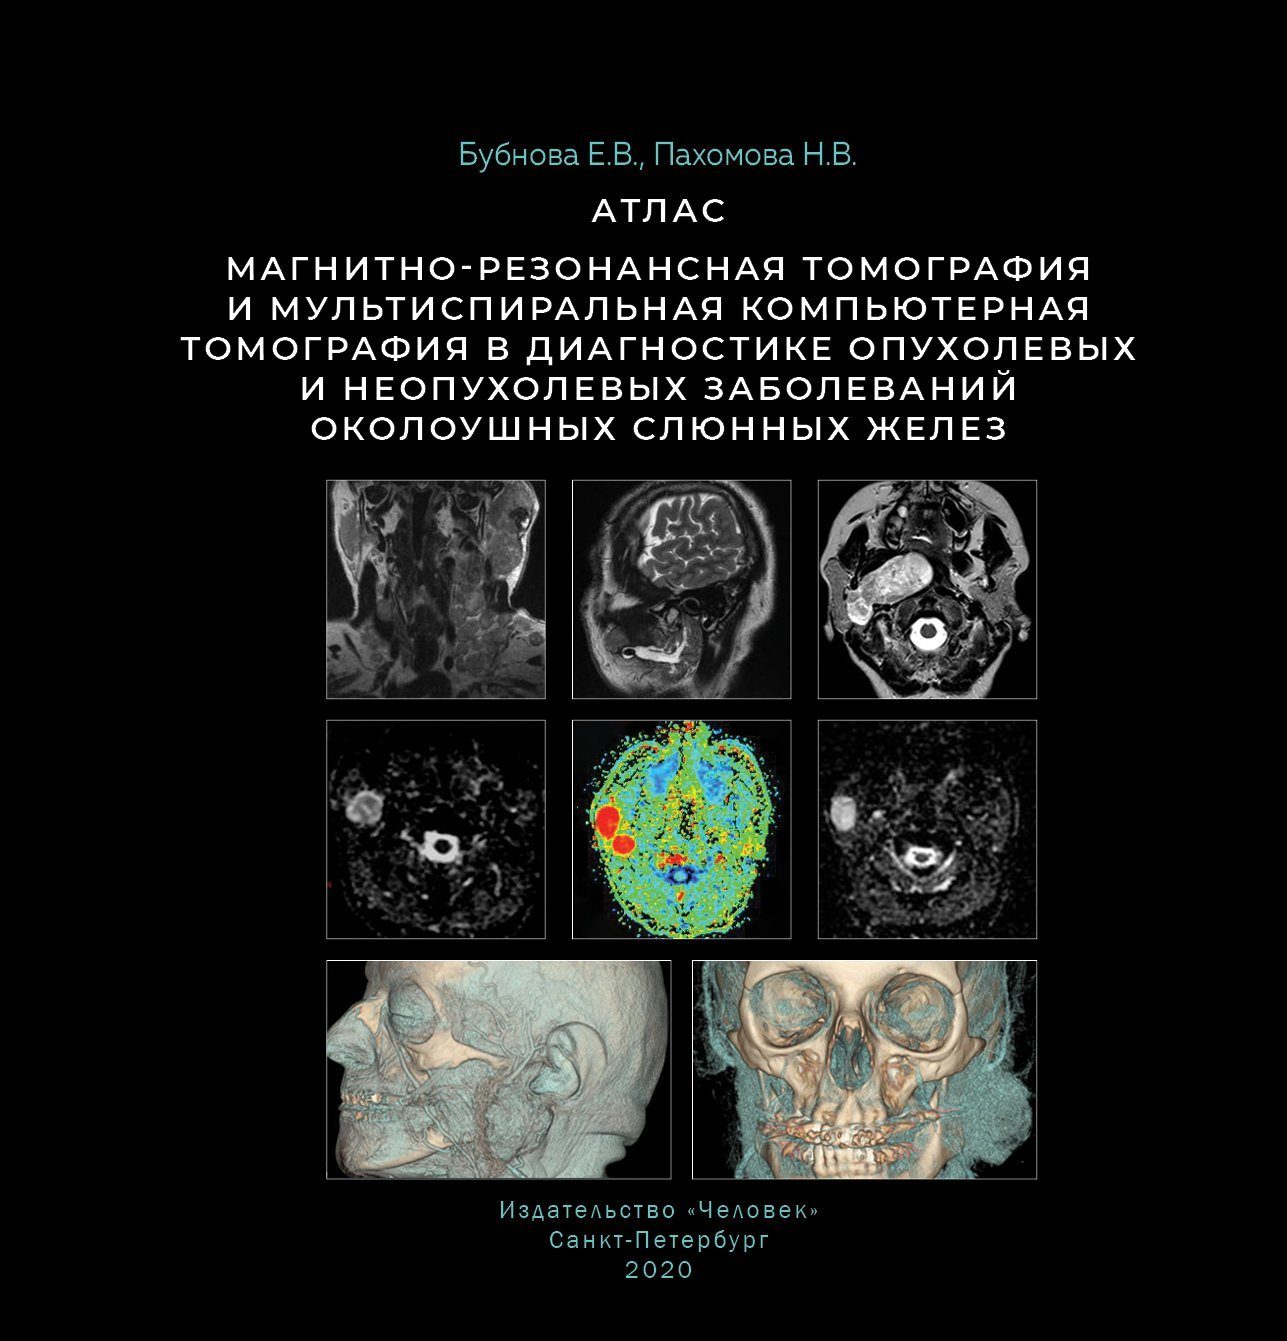 Пахомова Н.В., Бубнова Е.В. - Магнитно-резонансная томография и мультиспиральная компьютерная томография в диагностике опухолевых и неопухолевых заболеваний околоушных слюнных желез. Атлас 